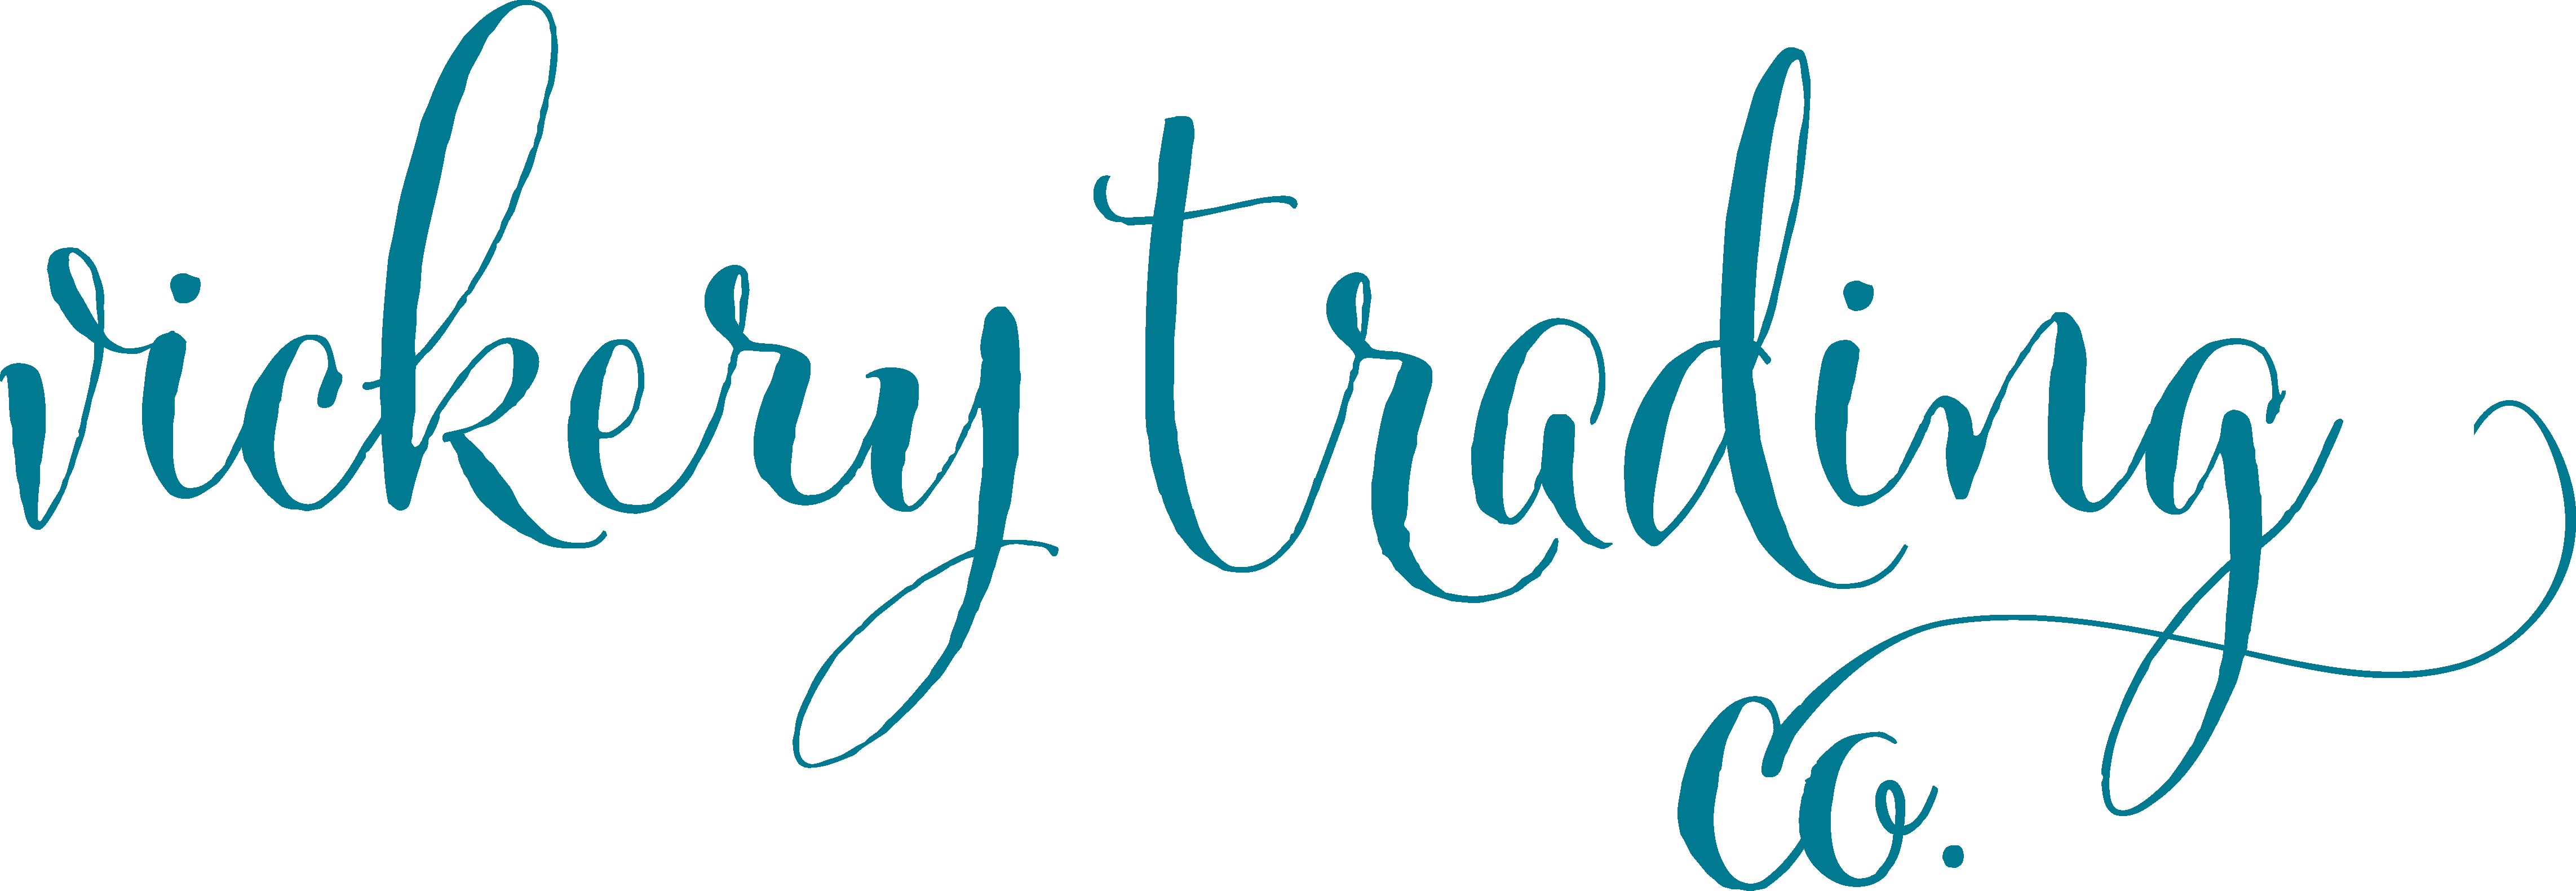 Vickery Trading Company logo